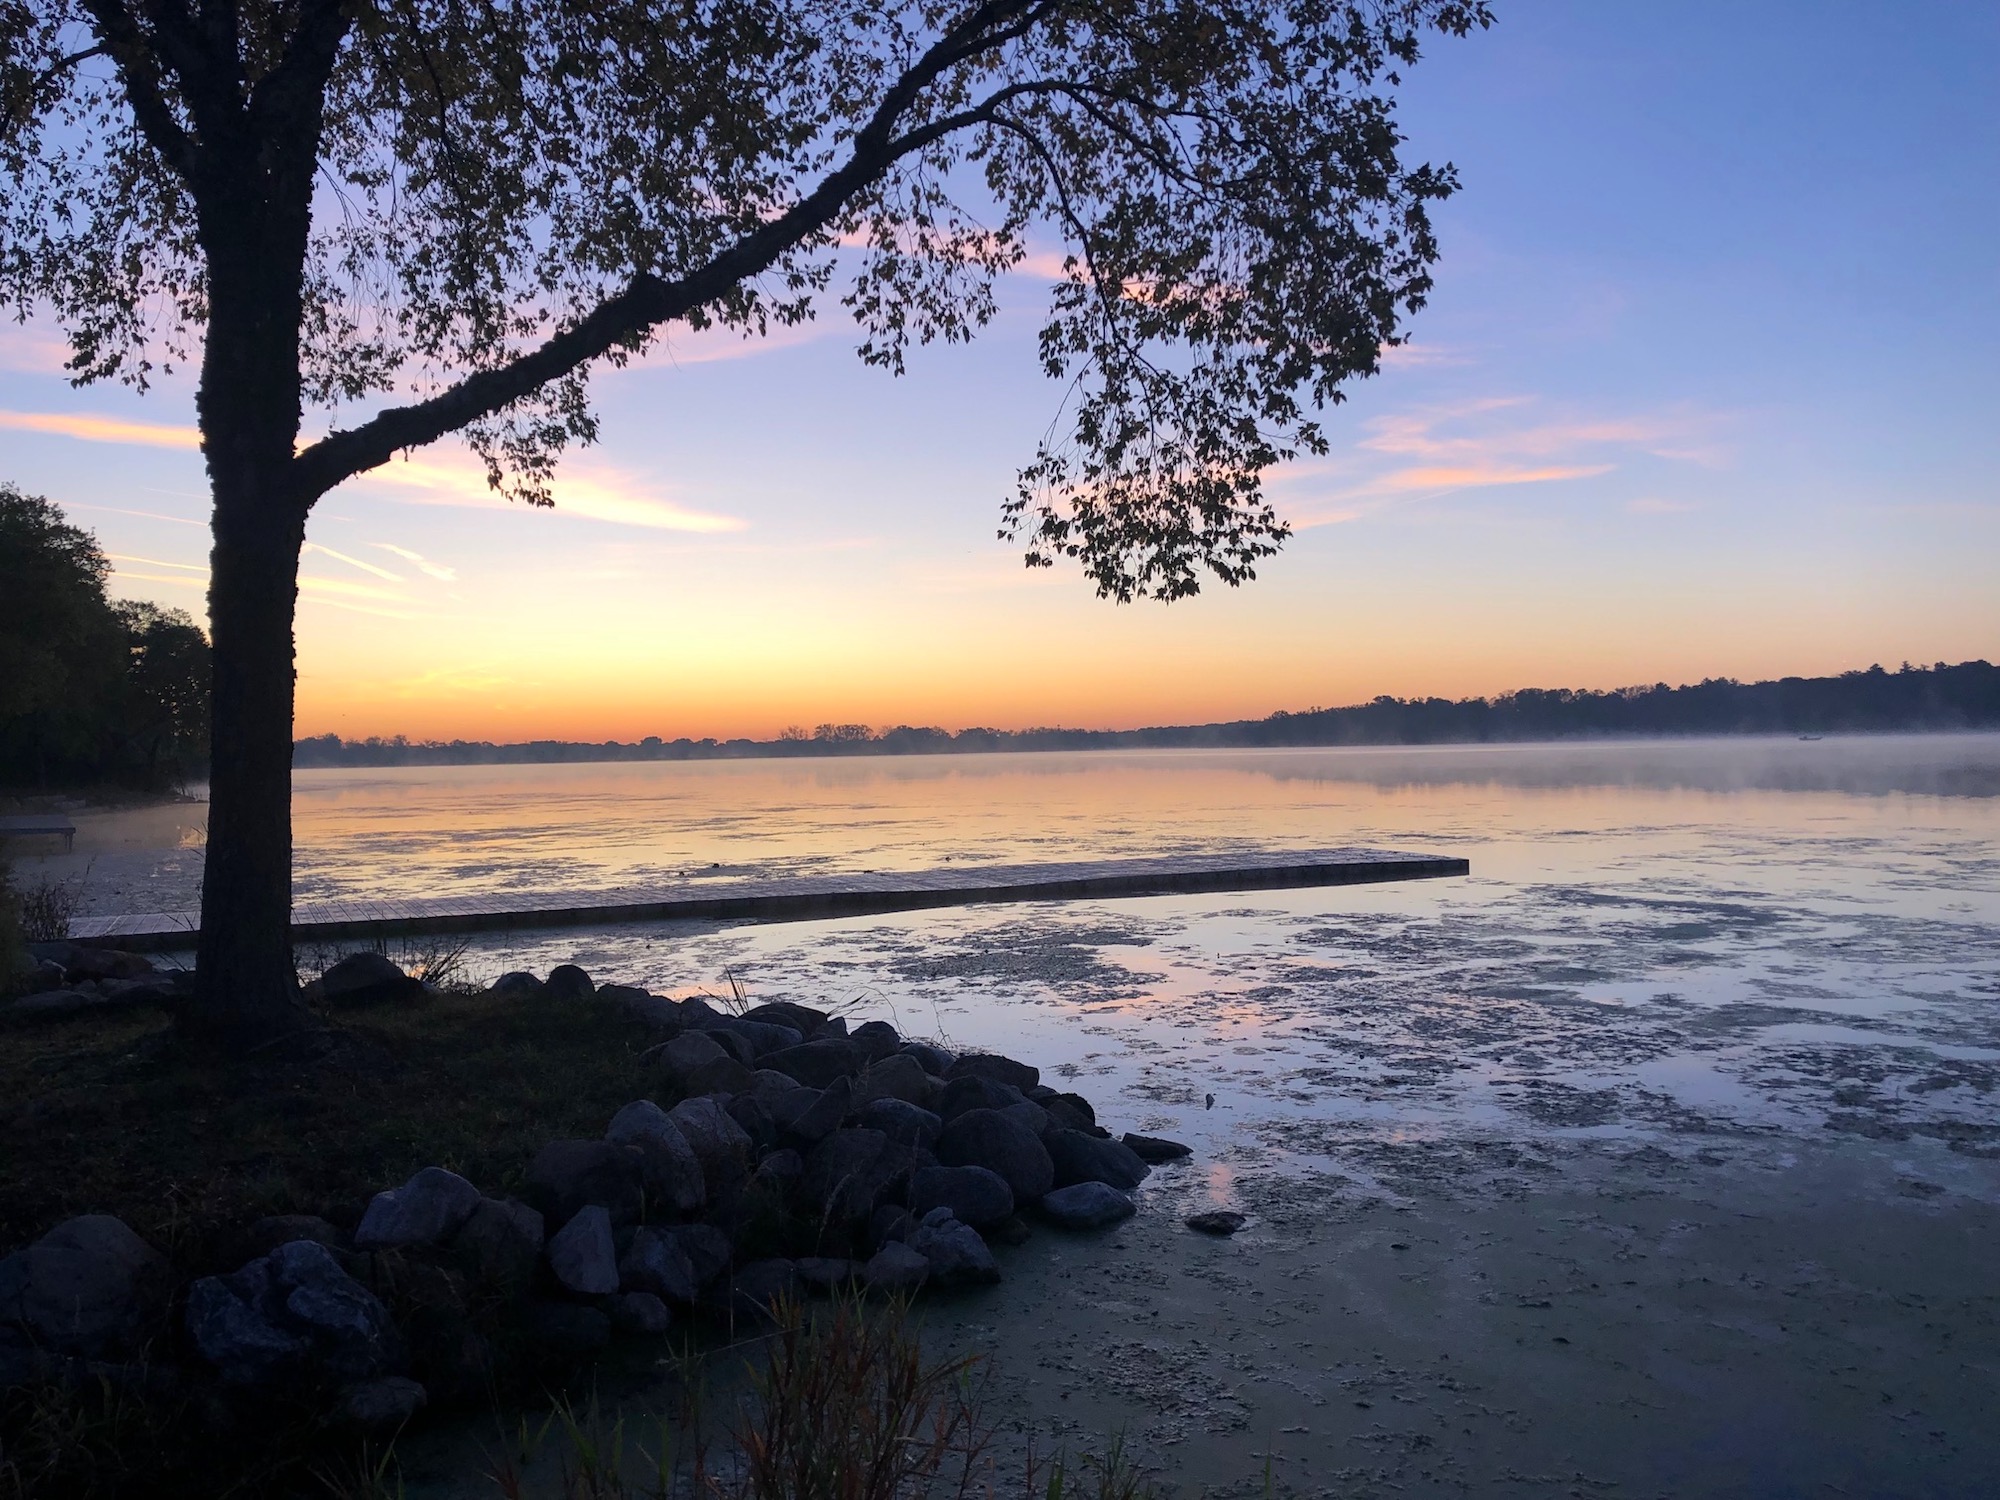 Lake Wingra on October 9, 2019.